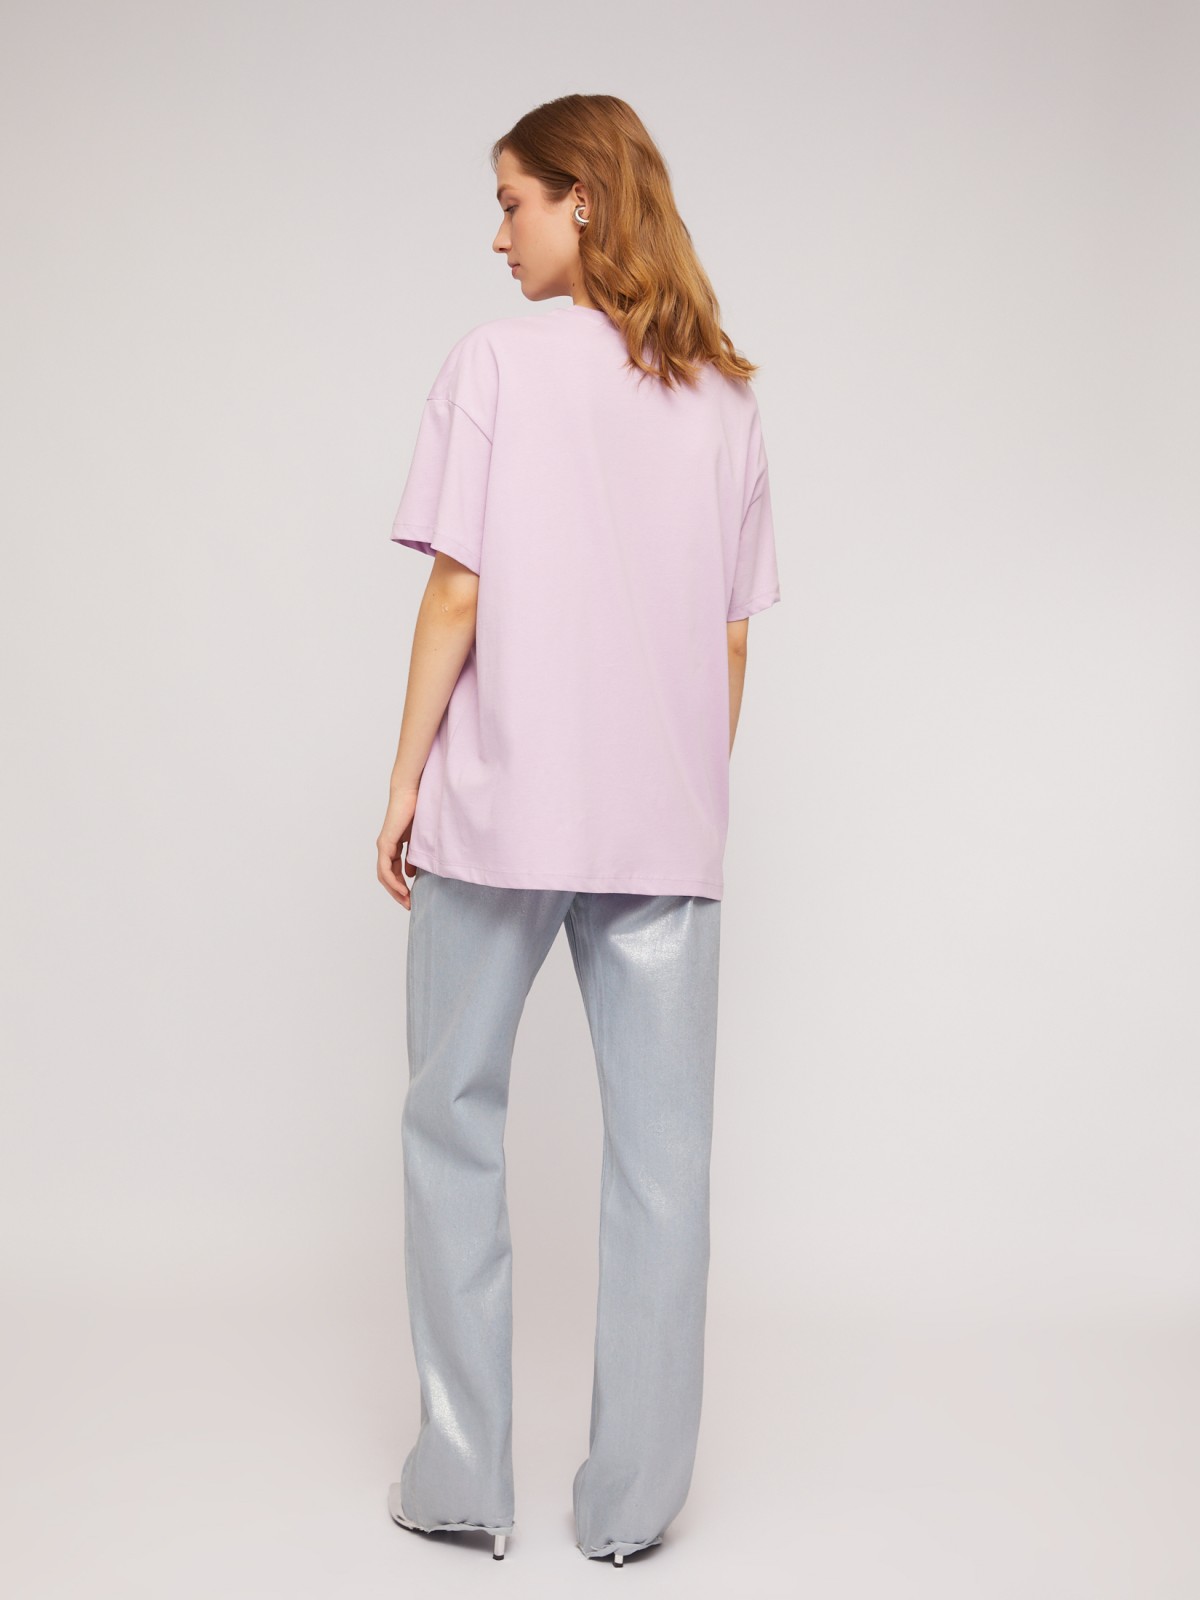 Трикотажная футболка из хлопка с принтом zolla N2424320W183, цвет лиловый, размер XS - фото 6